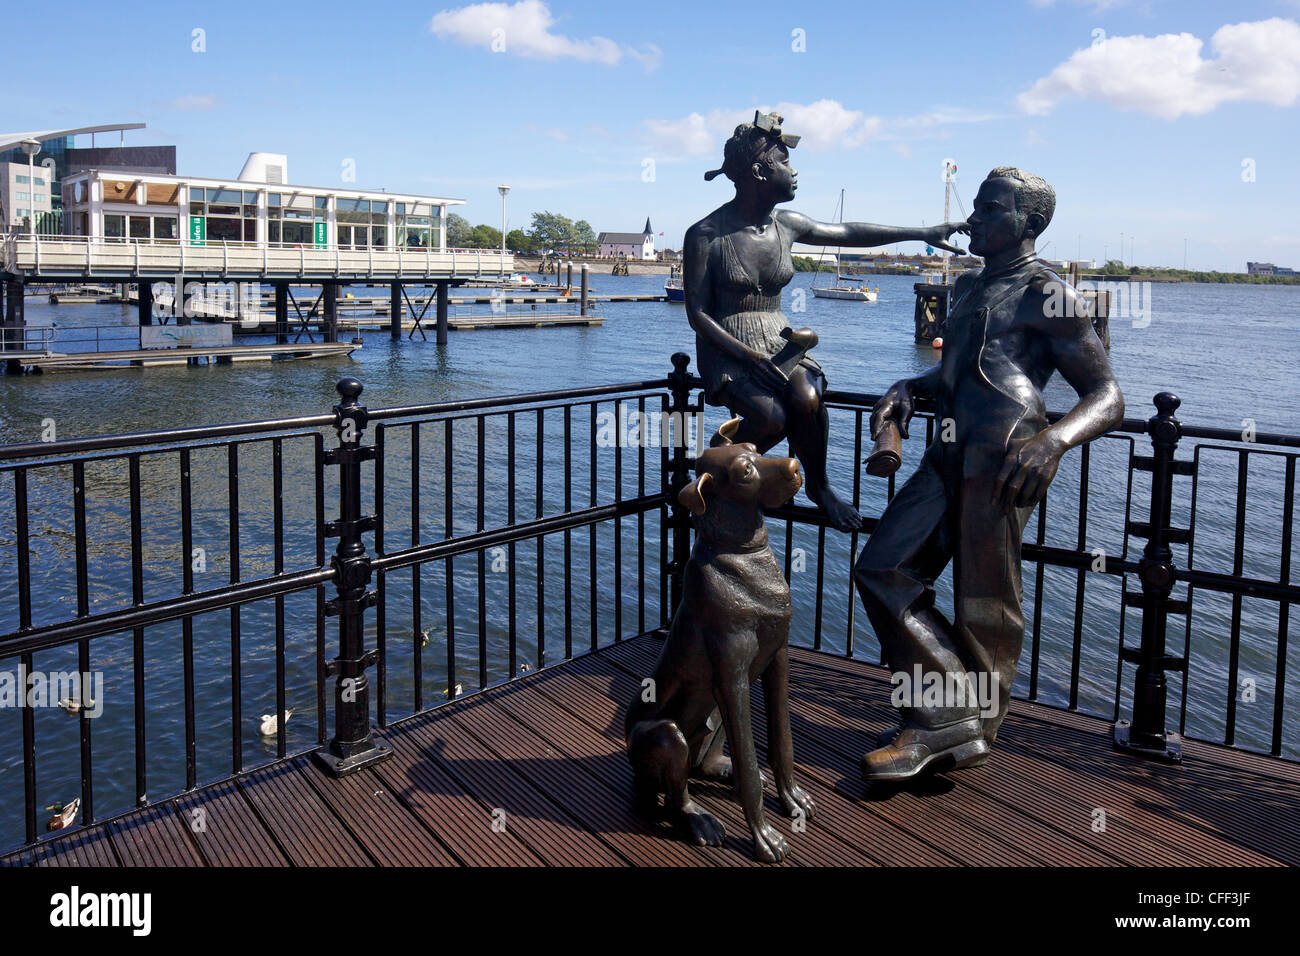 Les gens comme nous, sculpture en bronze par John Clinch, 1993, le Mermaid Quay, Cardiff Bay, South Glamorgan, Pays de Galles, Royaume-Uni Banque D'Images